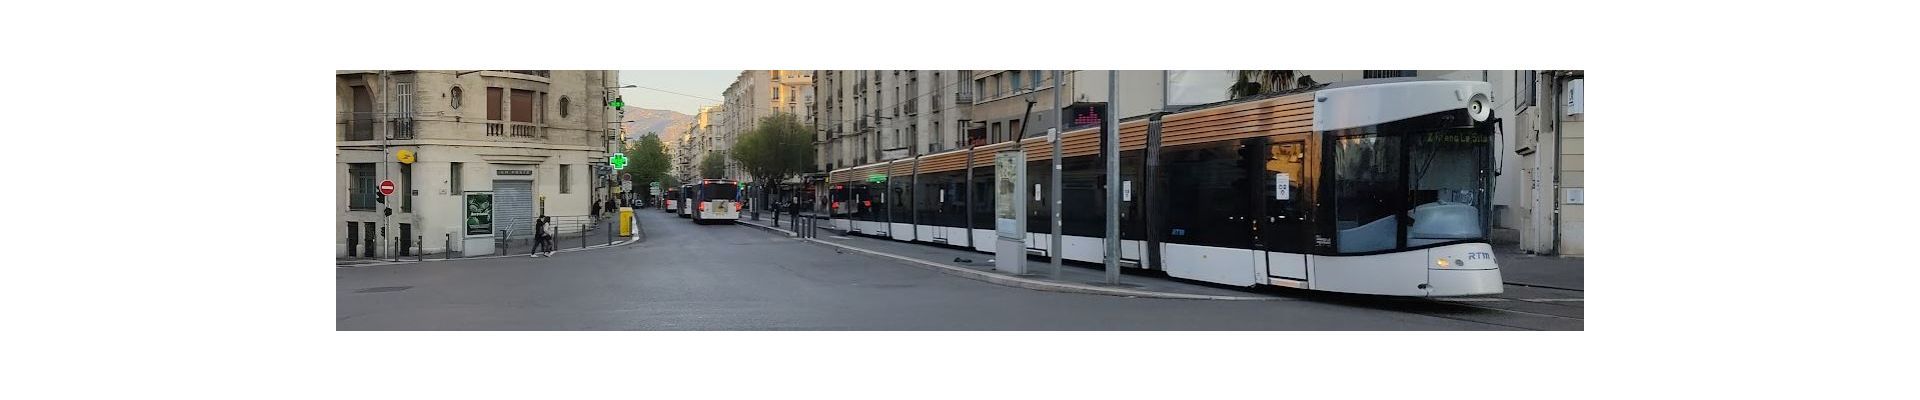 Mise en place d'une zone à faibles émissions mobilité (ZFE-m) à Marseille